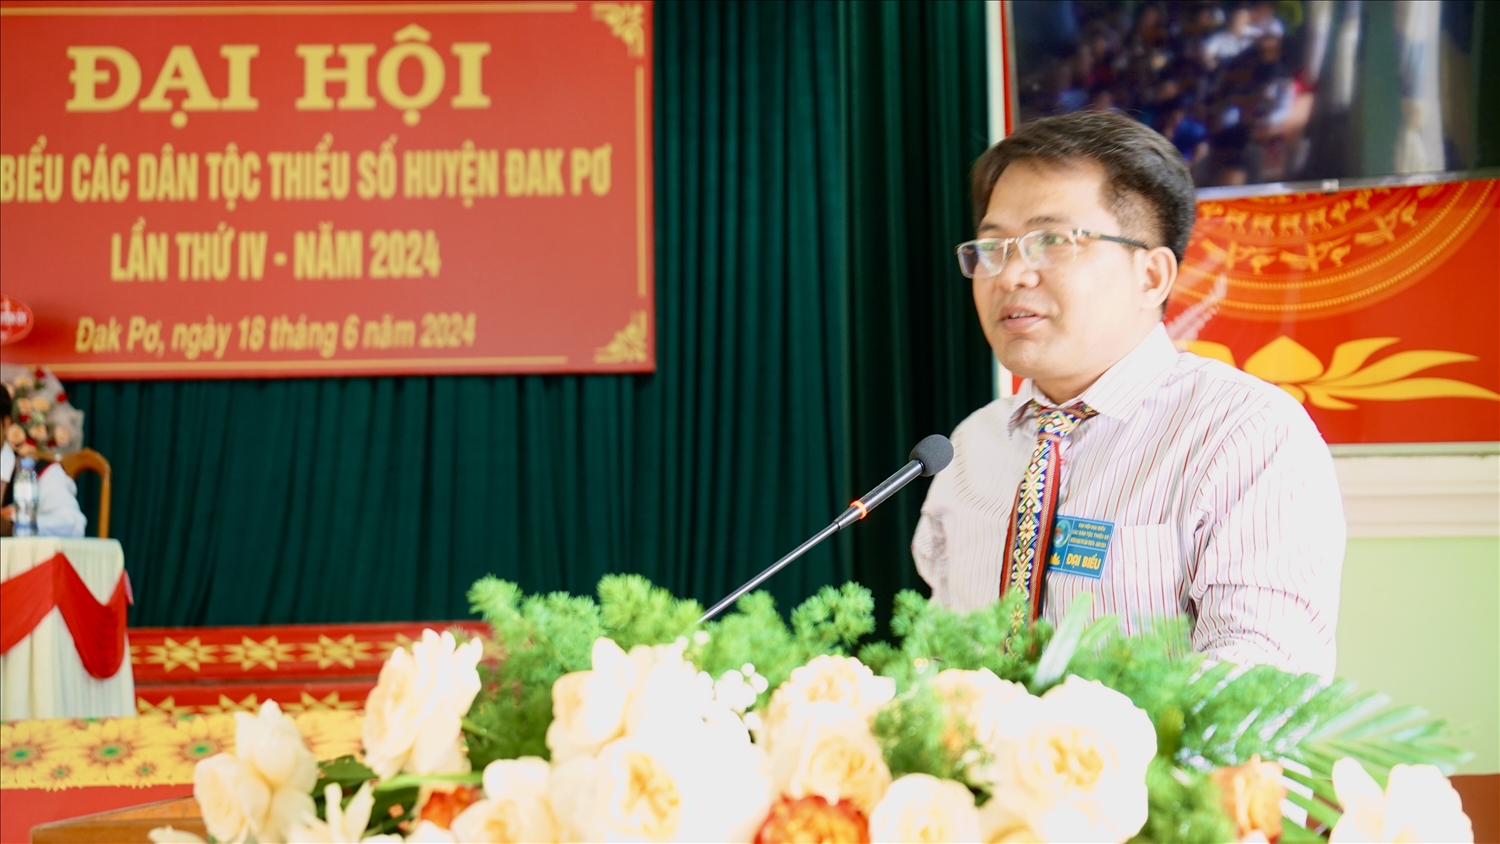 Ông Trường Trung Tuyến, Phó Trưởng Ban Dân tộc tỉnh Gia Lai phát biểu chỉ đạo tại Đại hội